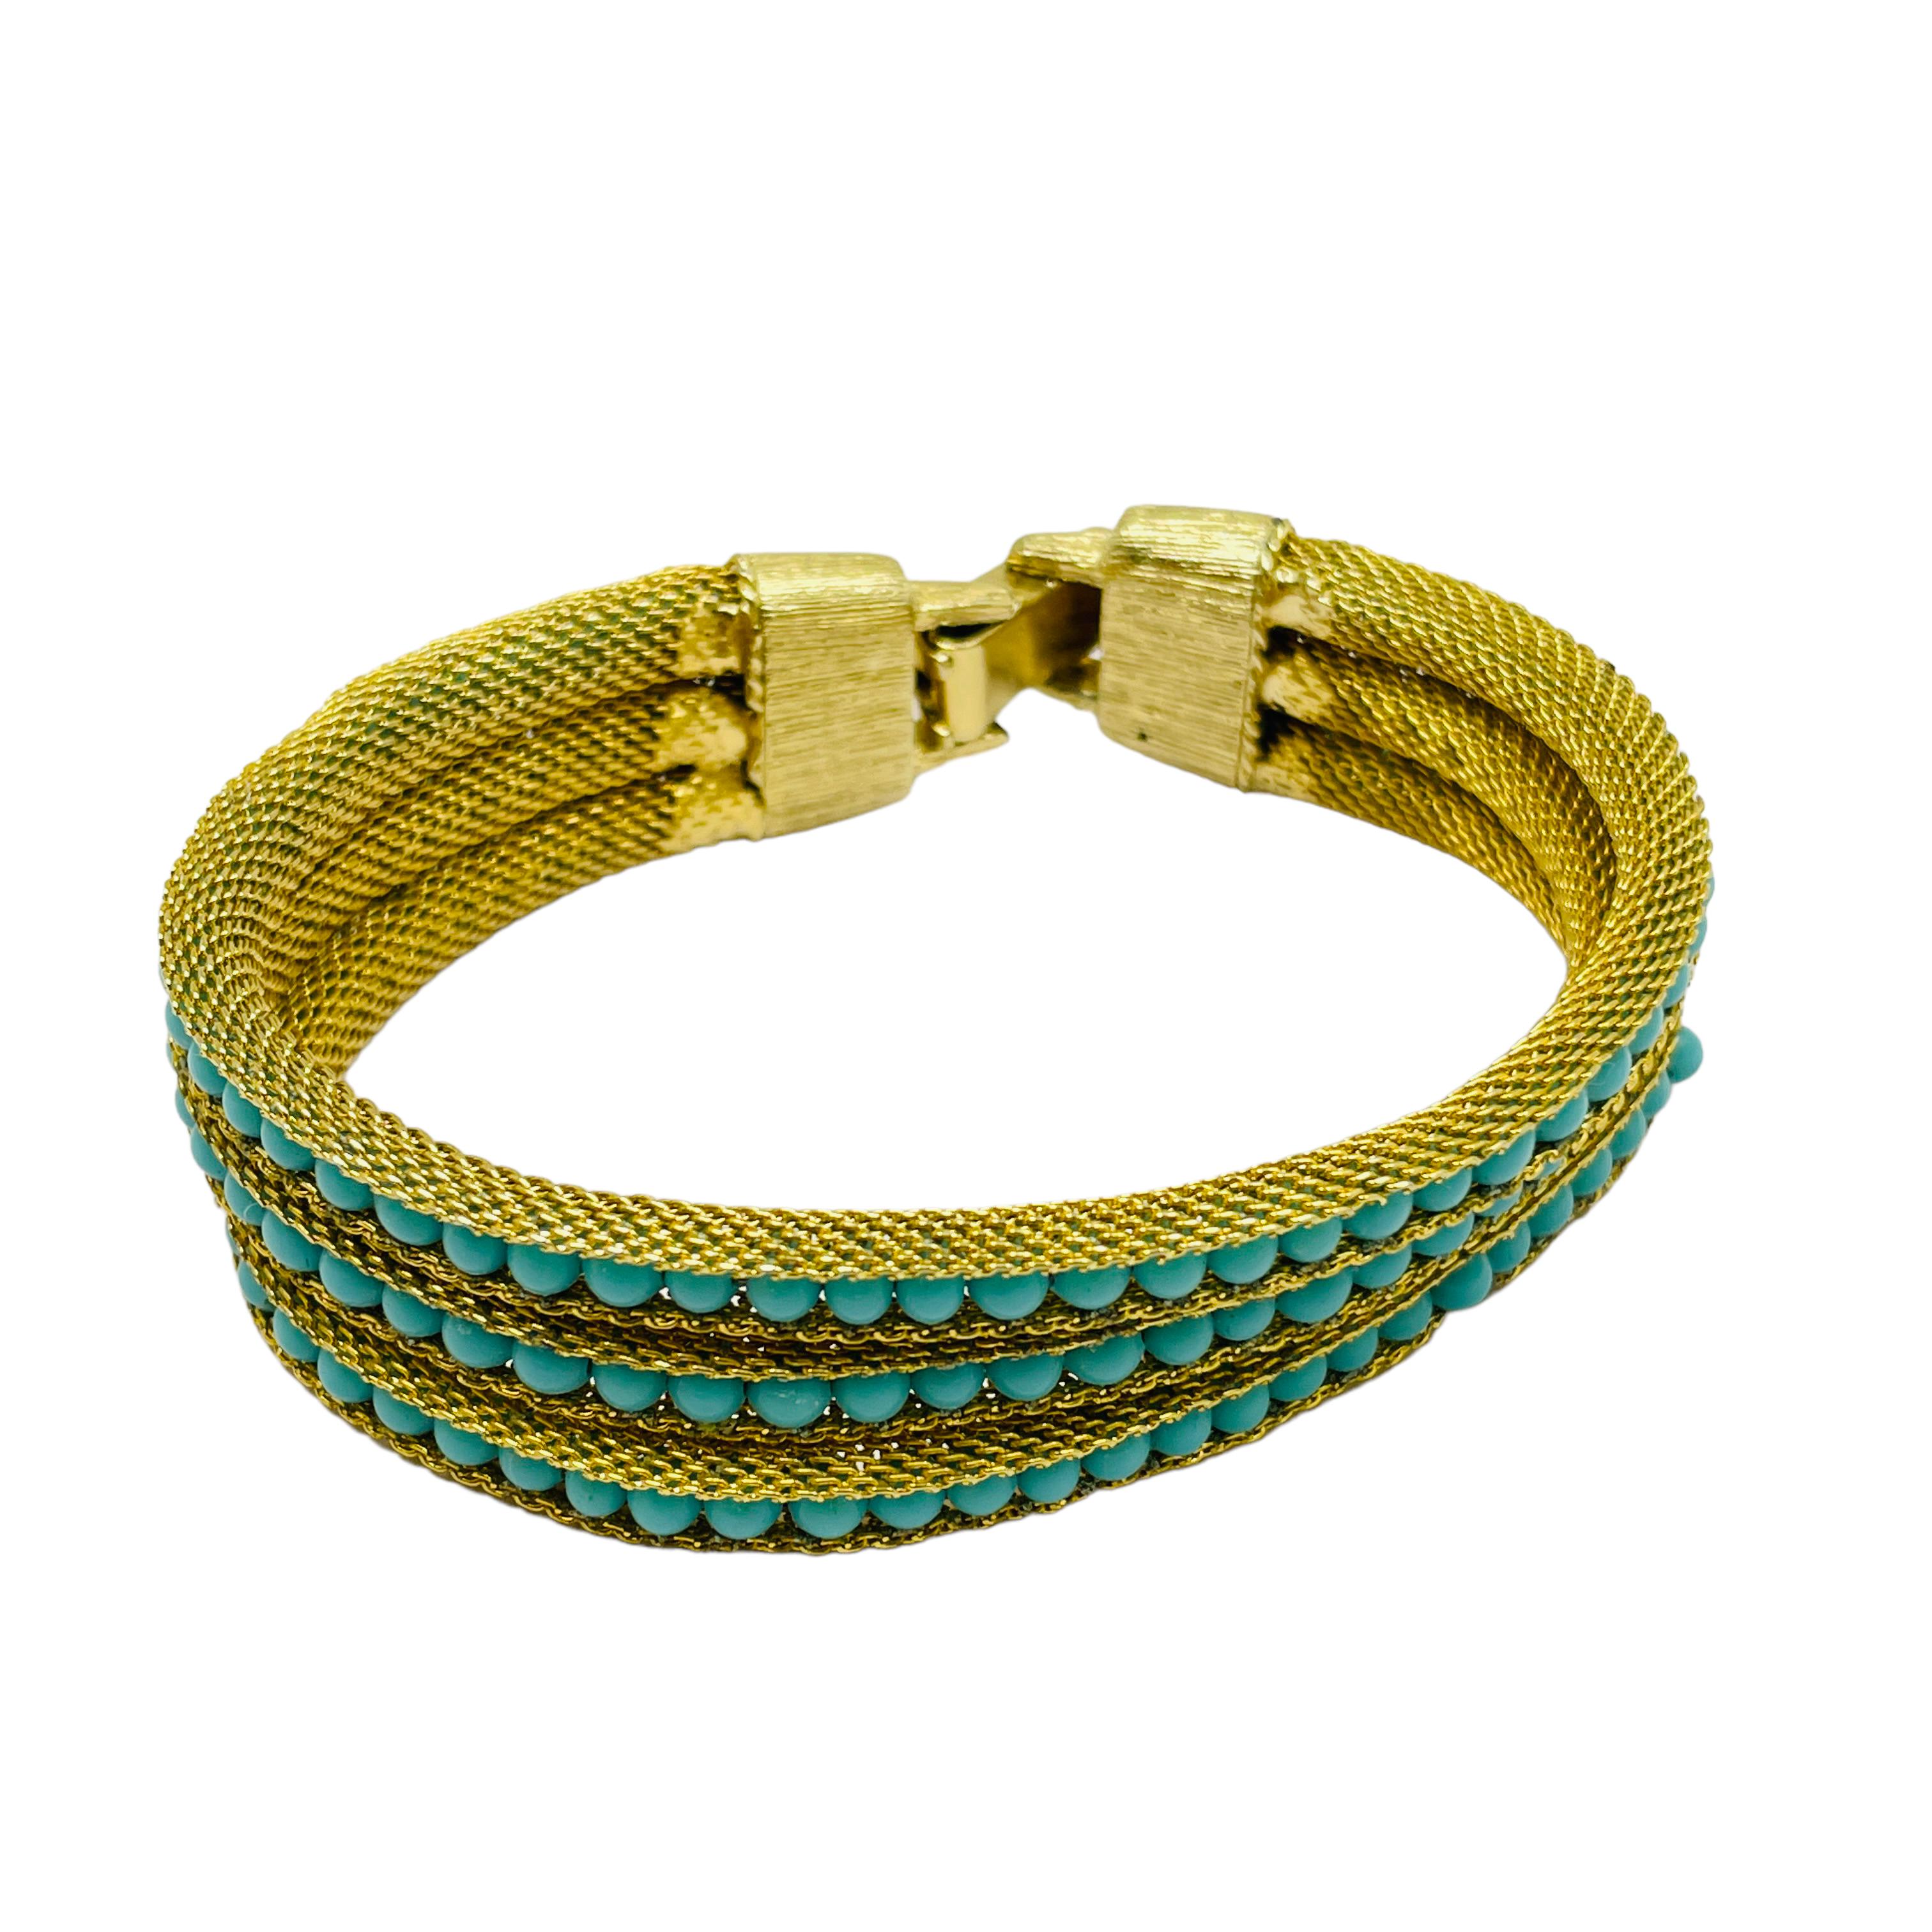 green designer bracelet